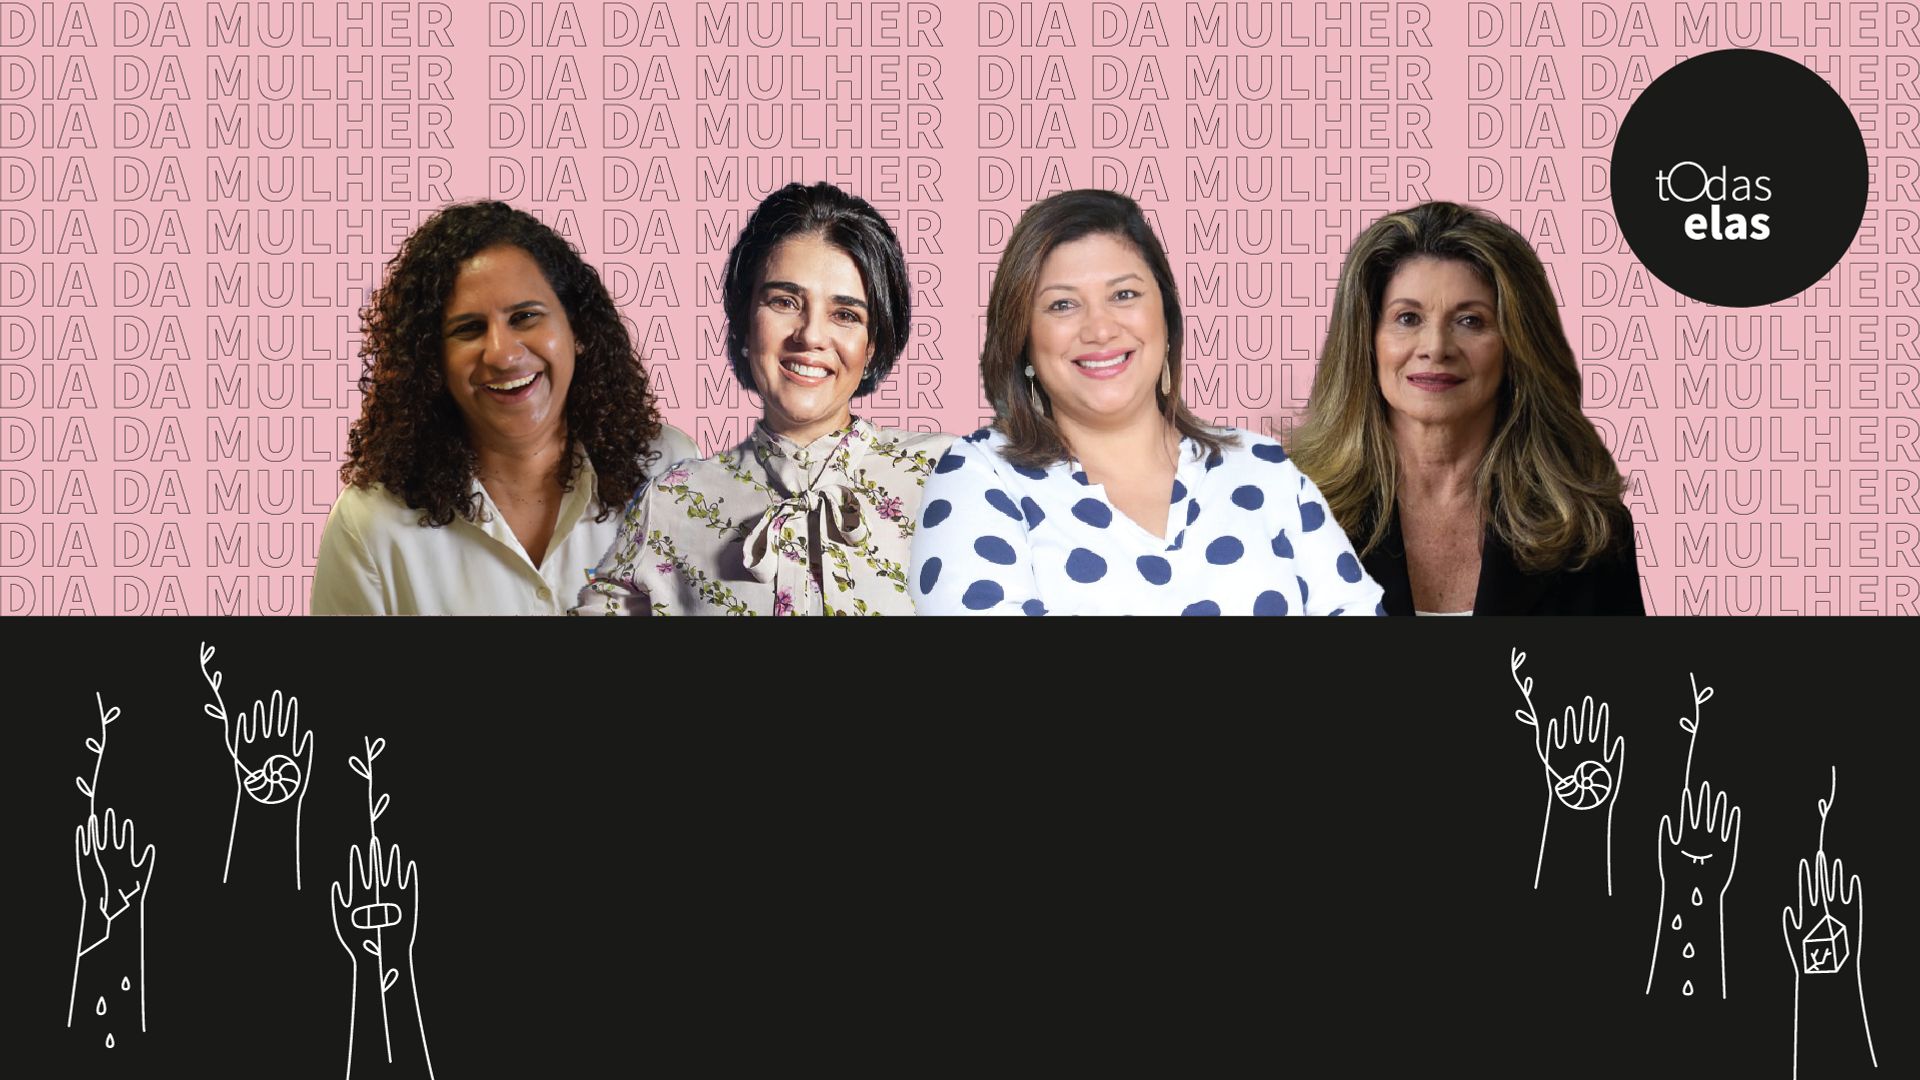 Jacqueline, Paula, Elaine e Marisa: pioneirismo
 feminino no mercado de trabalho 